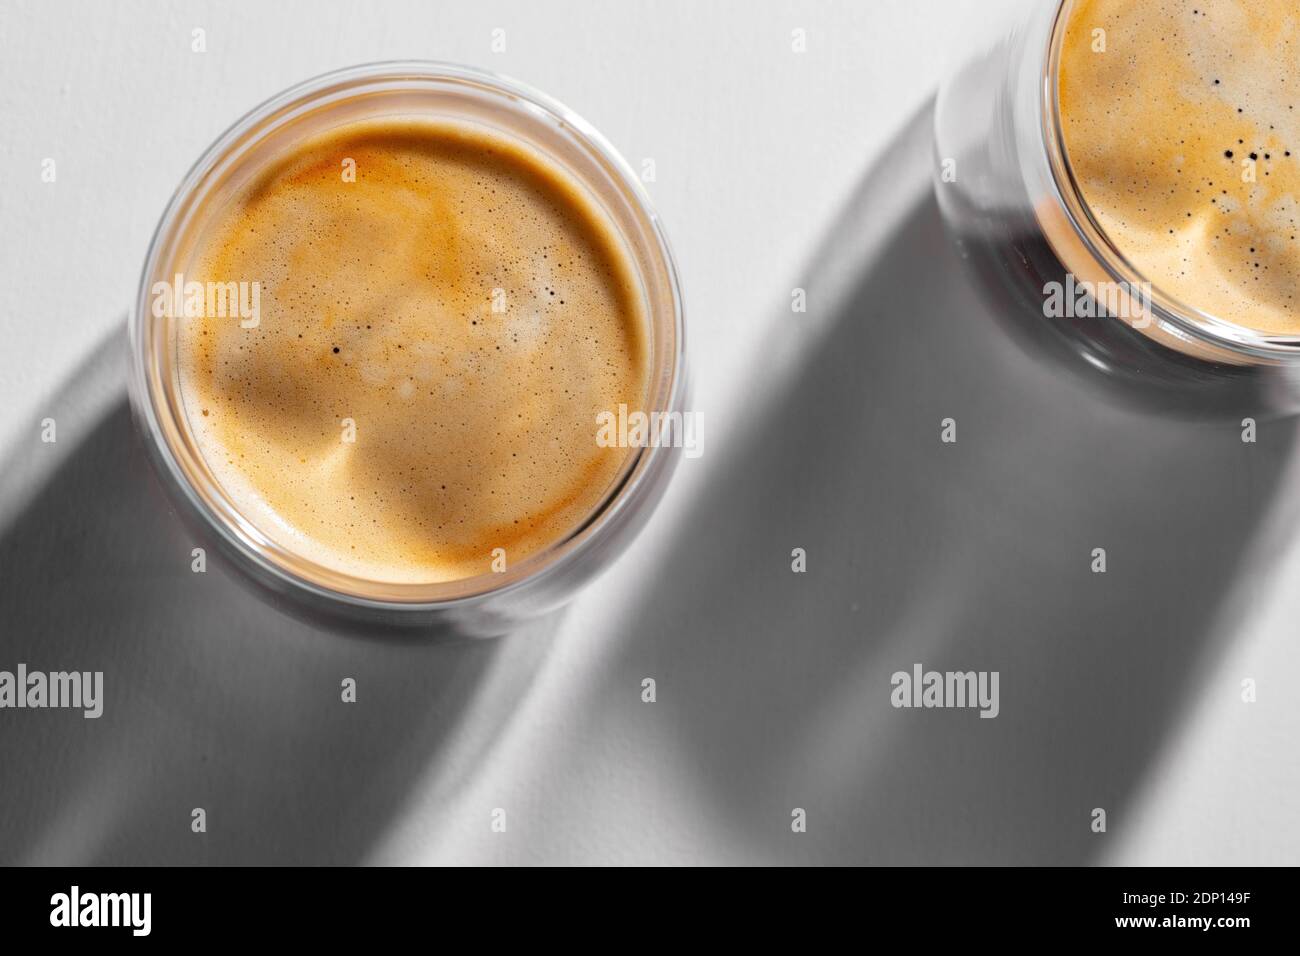 Americano Kaffee in Glas Tassen auf weißem Hintergrund mit lang Schatten  Stockfotografie - Alamy